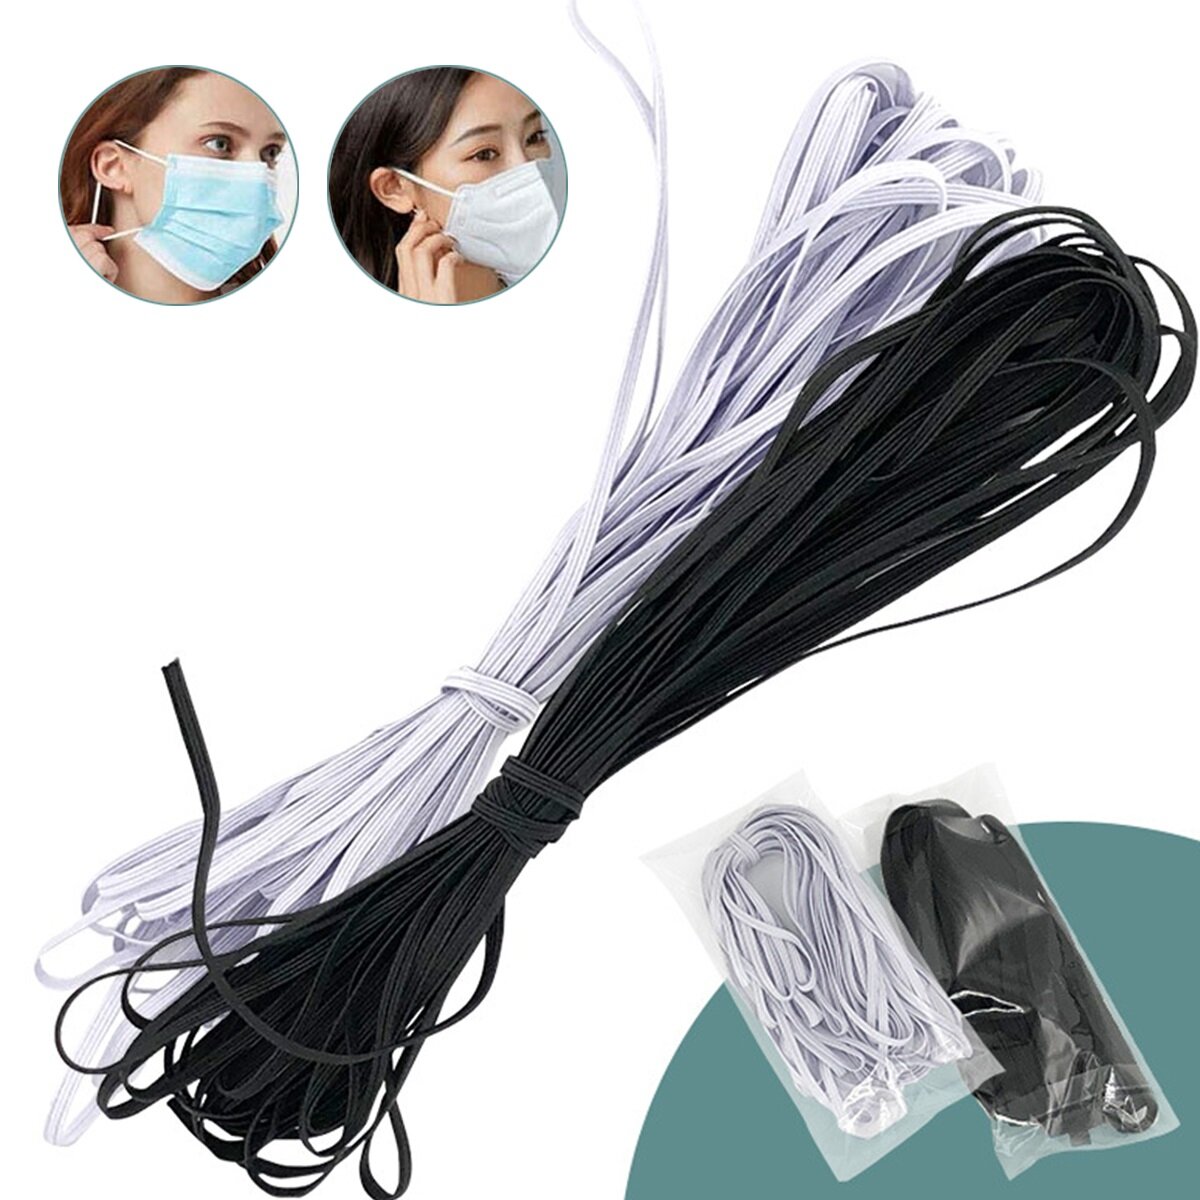 10m elastische band voor gezichtsmasker Gebreid elastisch ambachtelijk naaien Elastisch koordmasker 